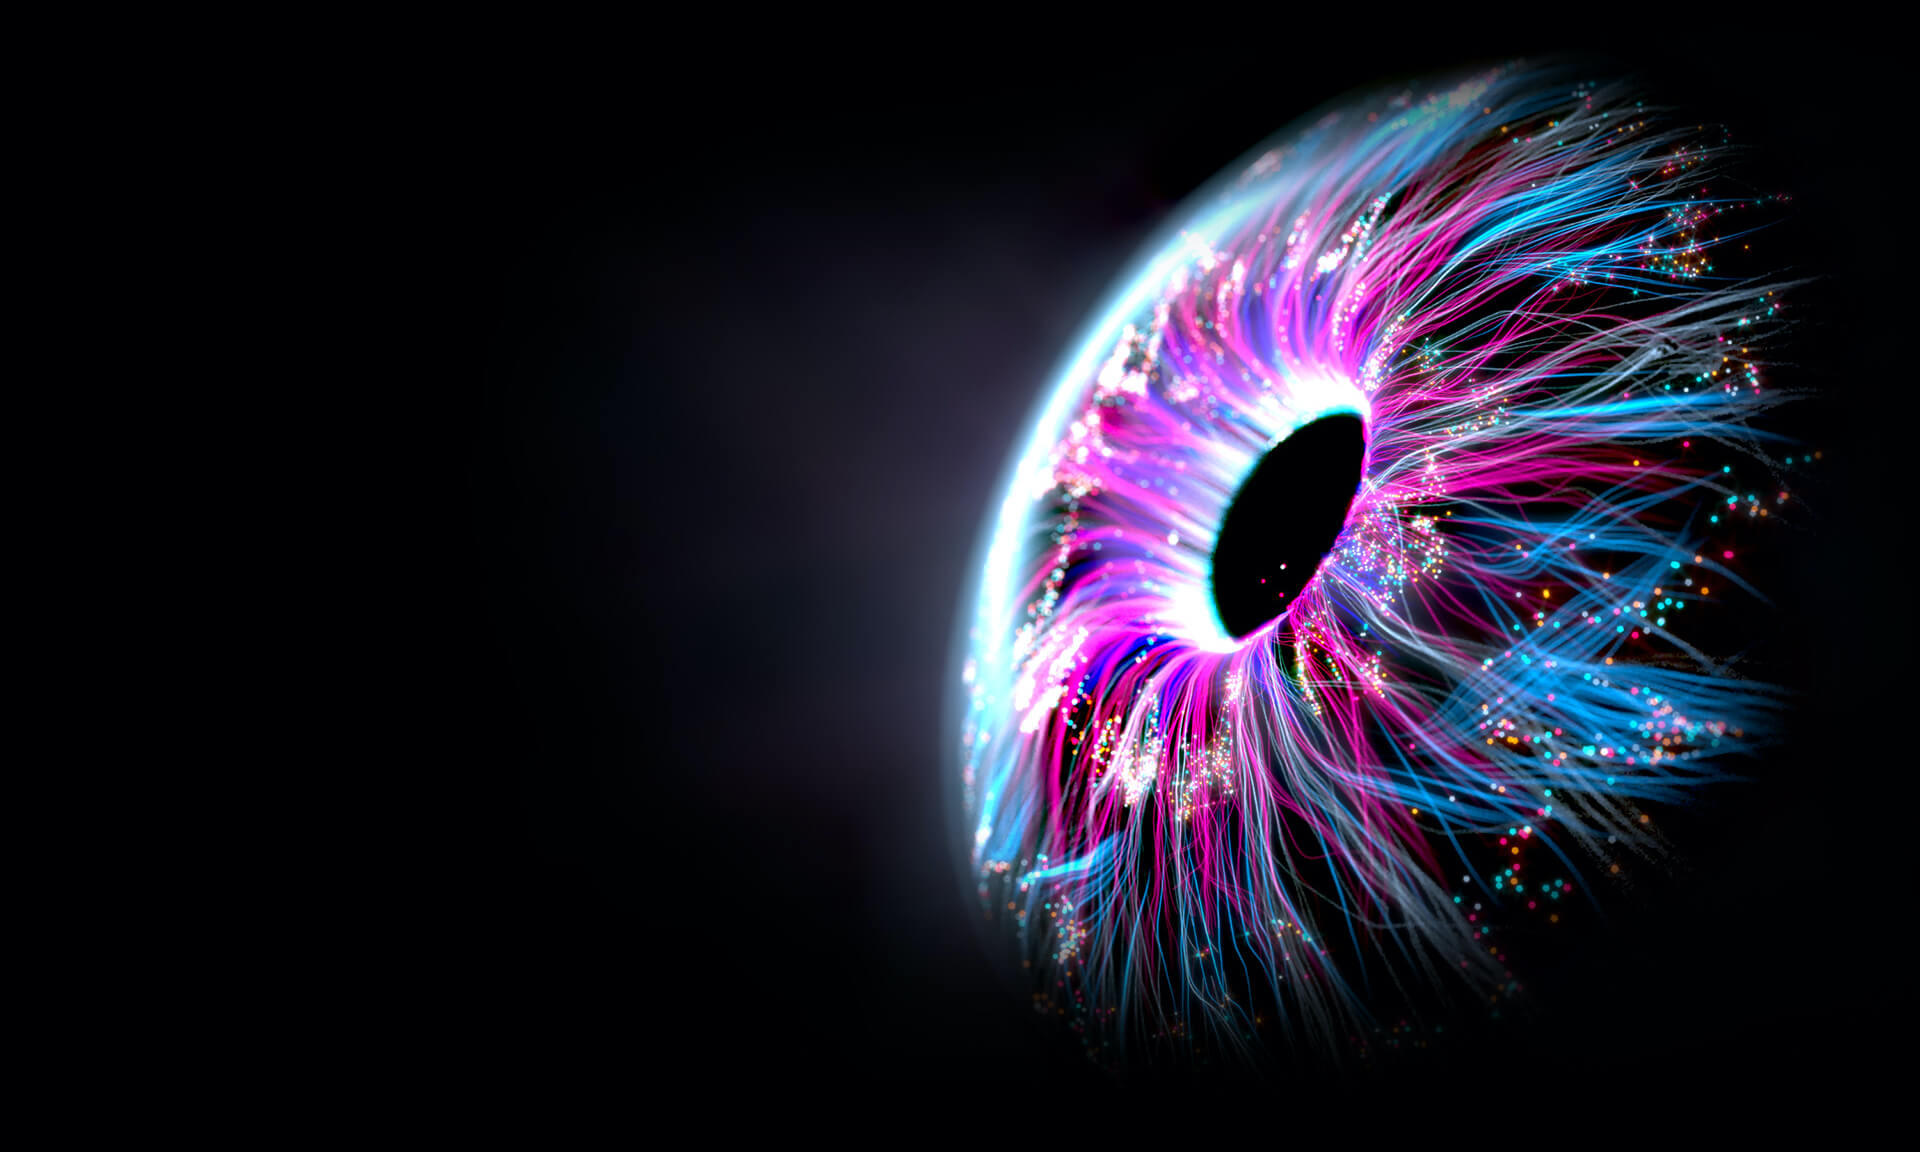 Una imagen aumentada de un ojo humano del que salen líneas de luz azul y púrpura